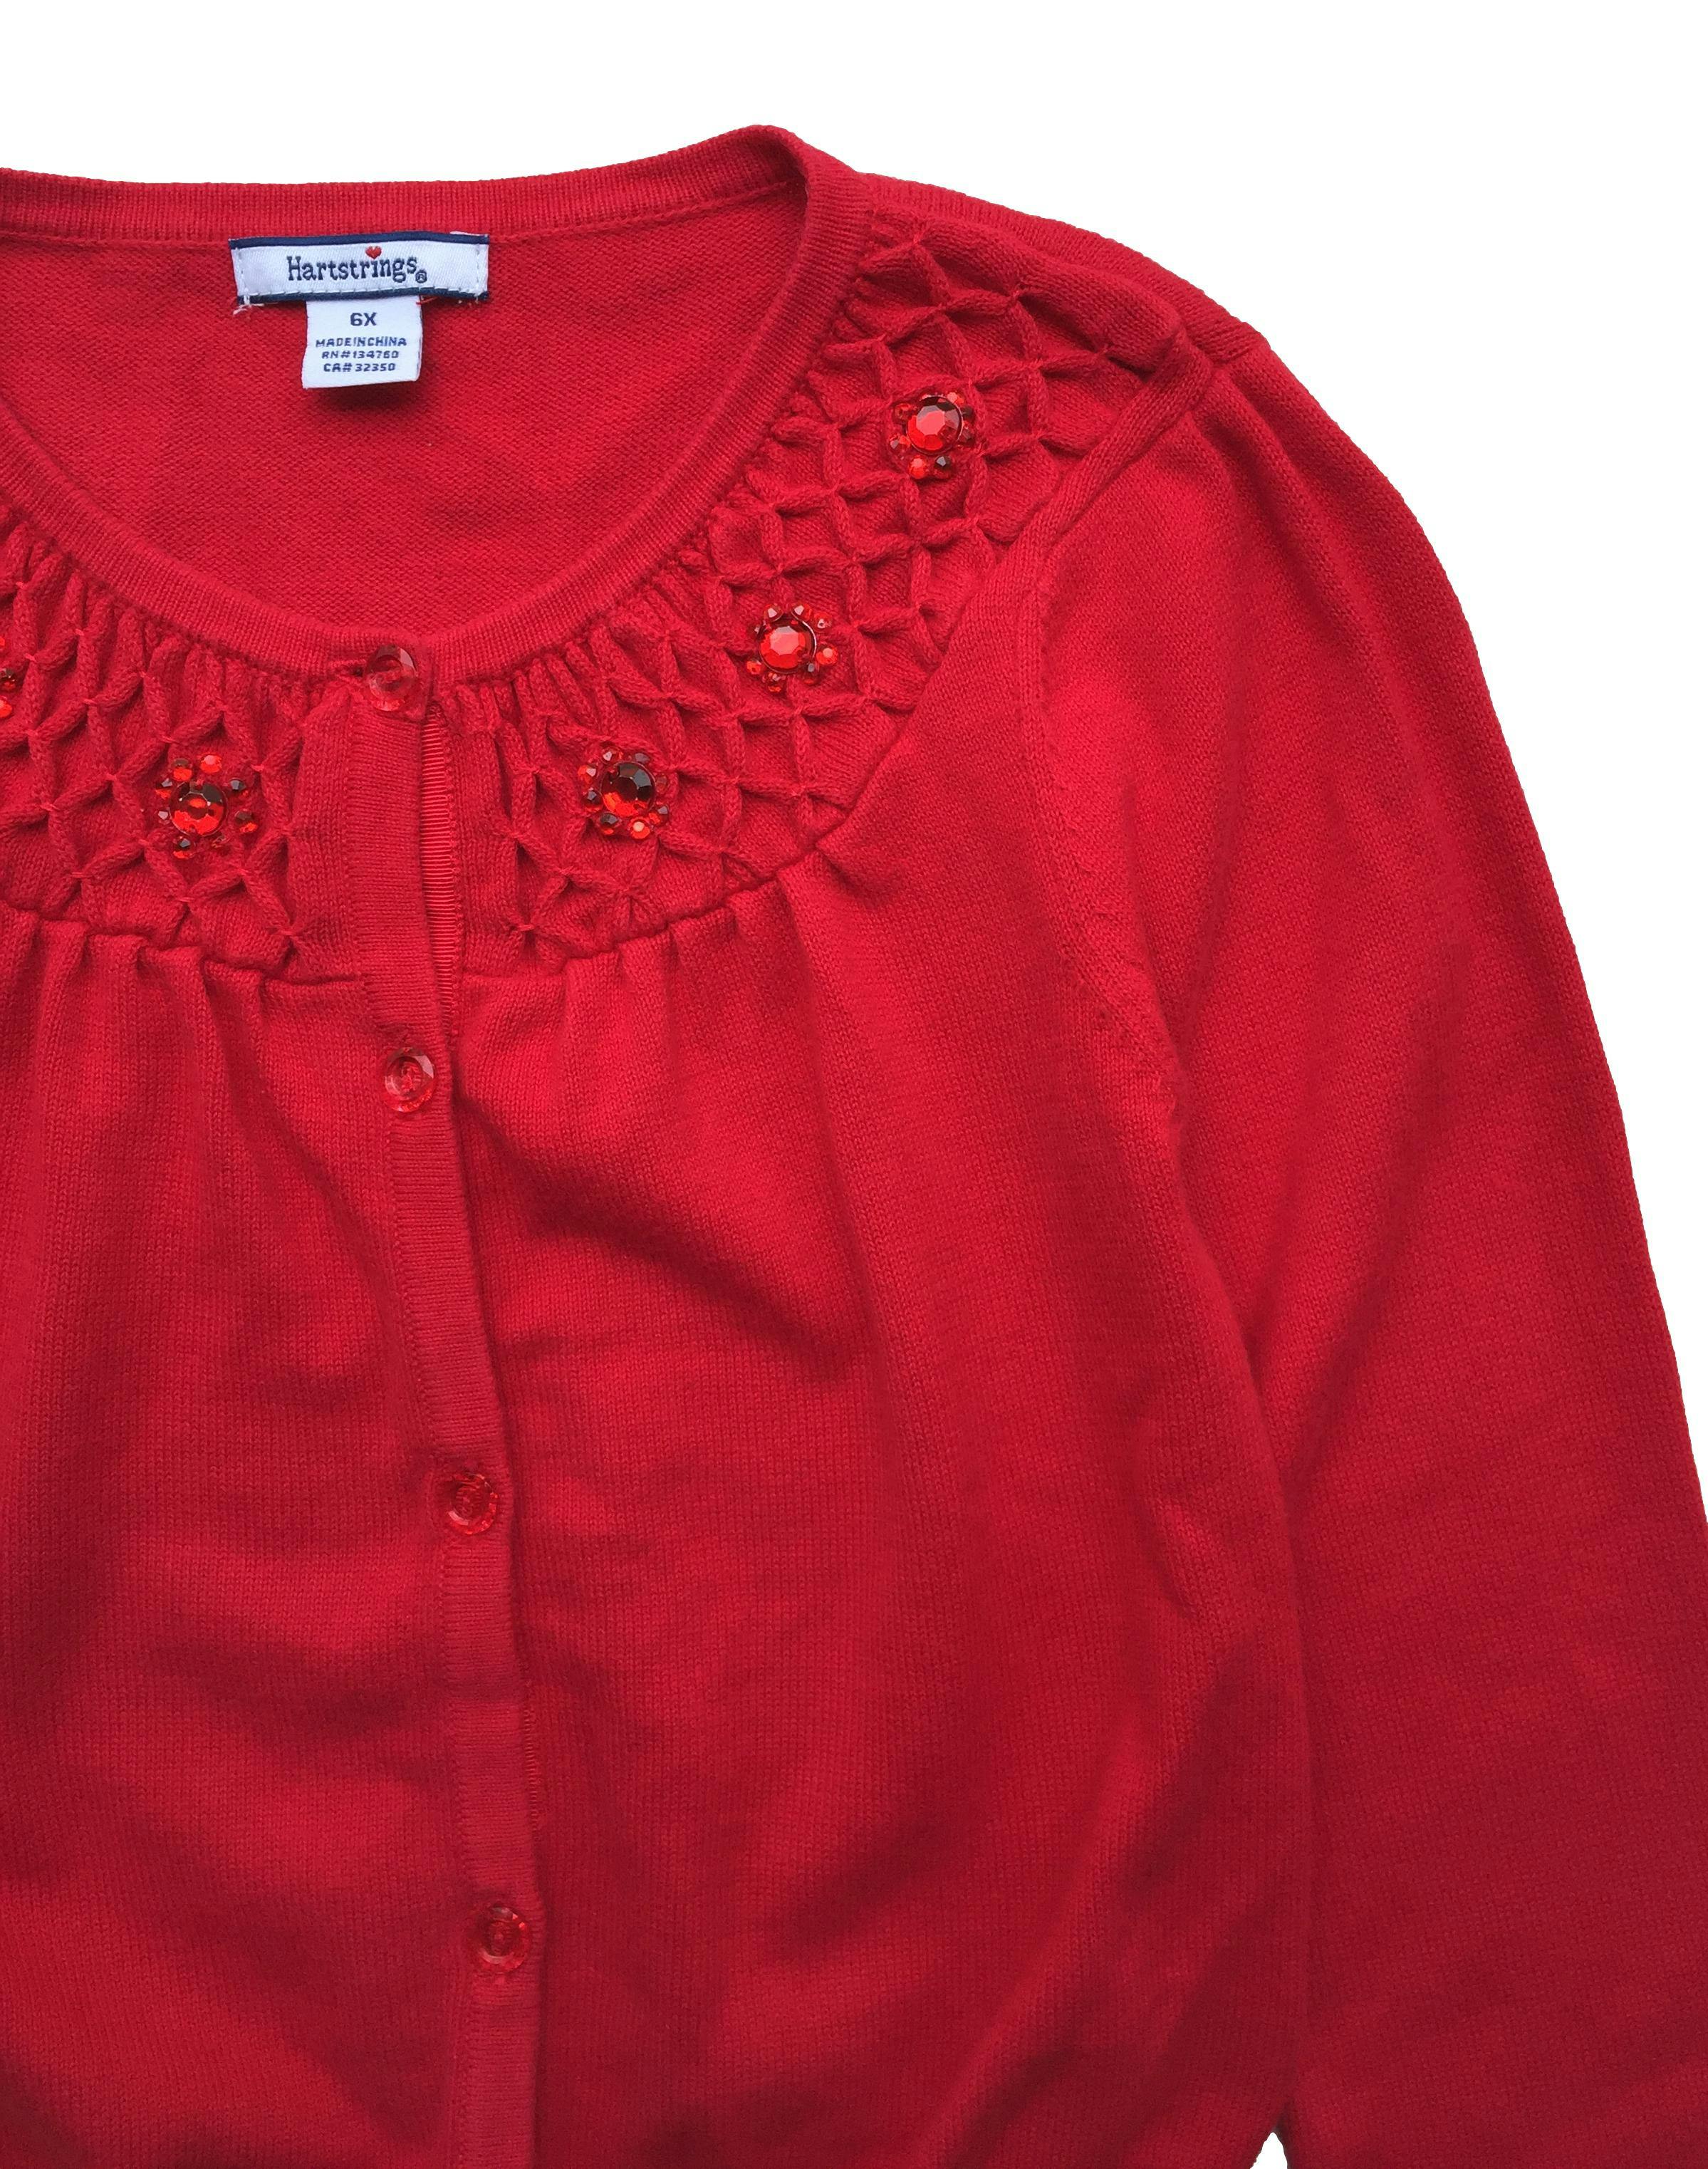 Cardigan rojo 100% algodón con aplicaciones cerca al cuello.